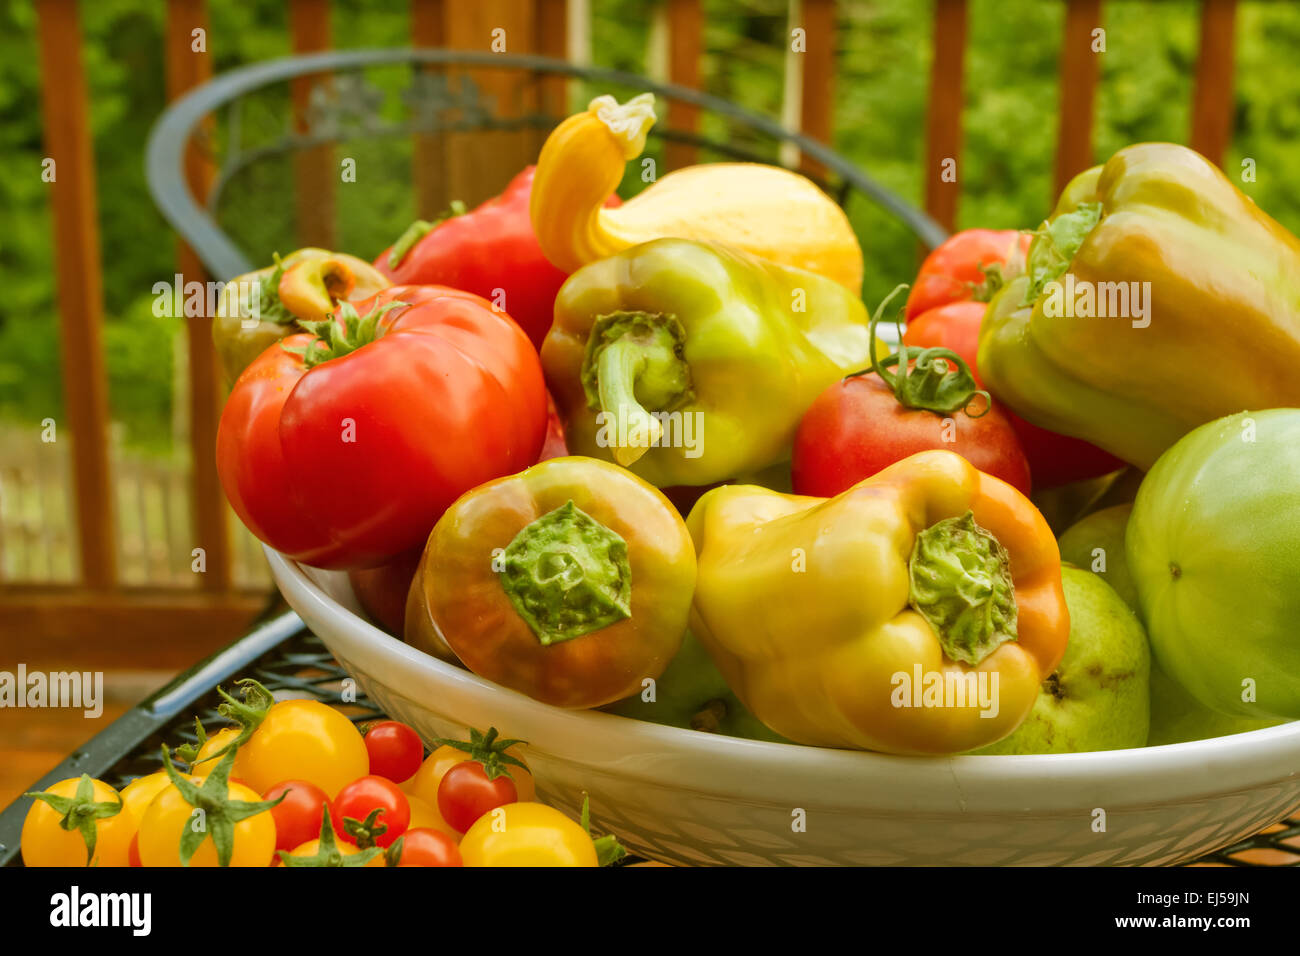 Ciotola di prodotti freschi, tra cui pomodori rossi, Gypsy hybrid peperoni, pere, e l'estate crookneck squash Foto Stock